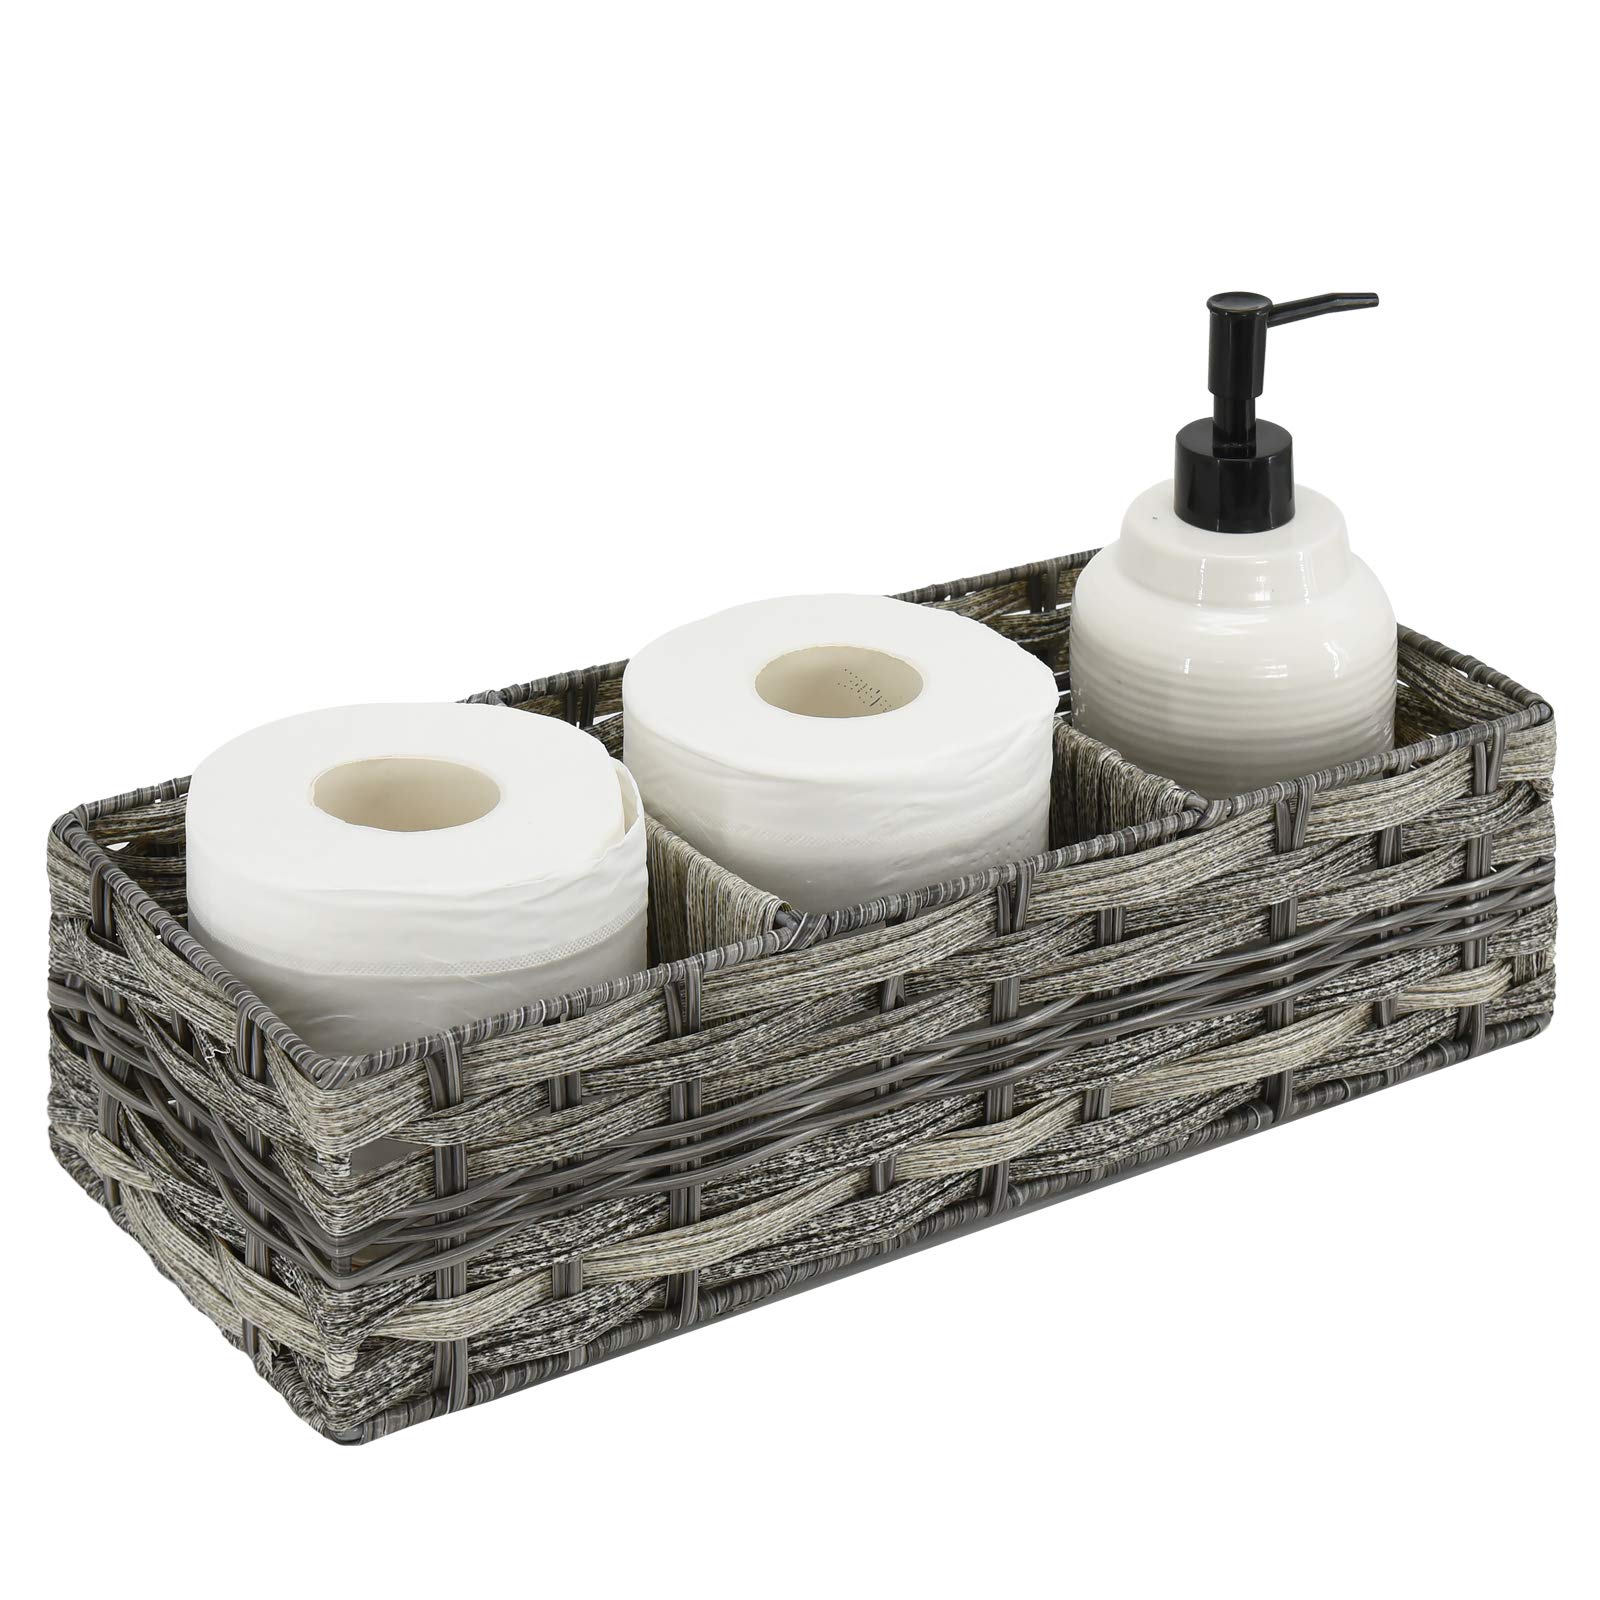 Wicker Storage Baskets/ Toilet Tank Holder, Bathroom Storage